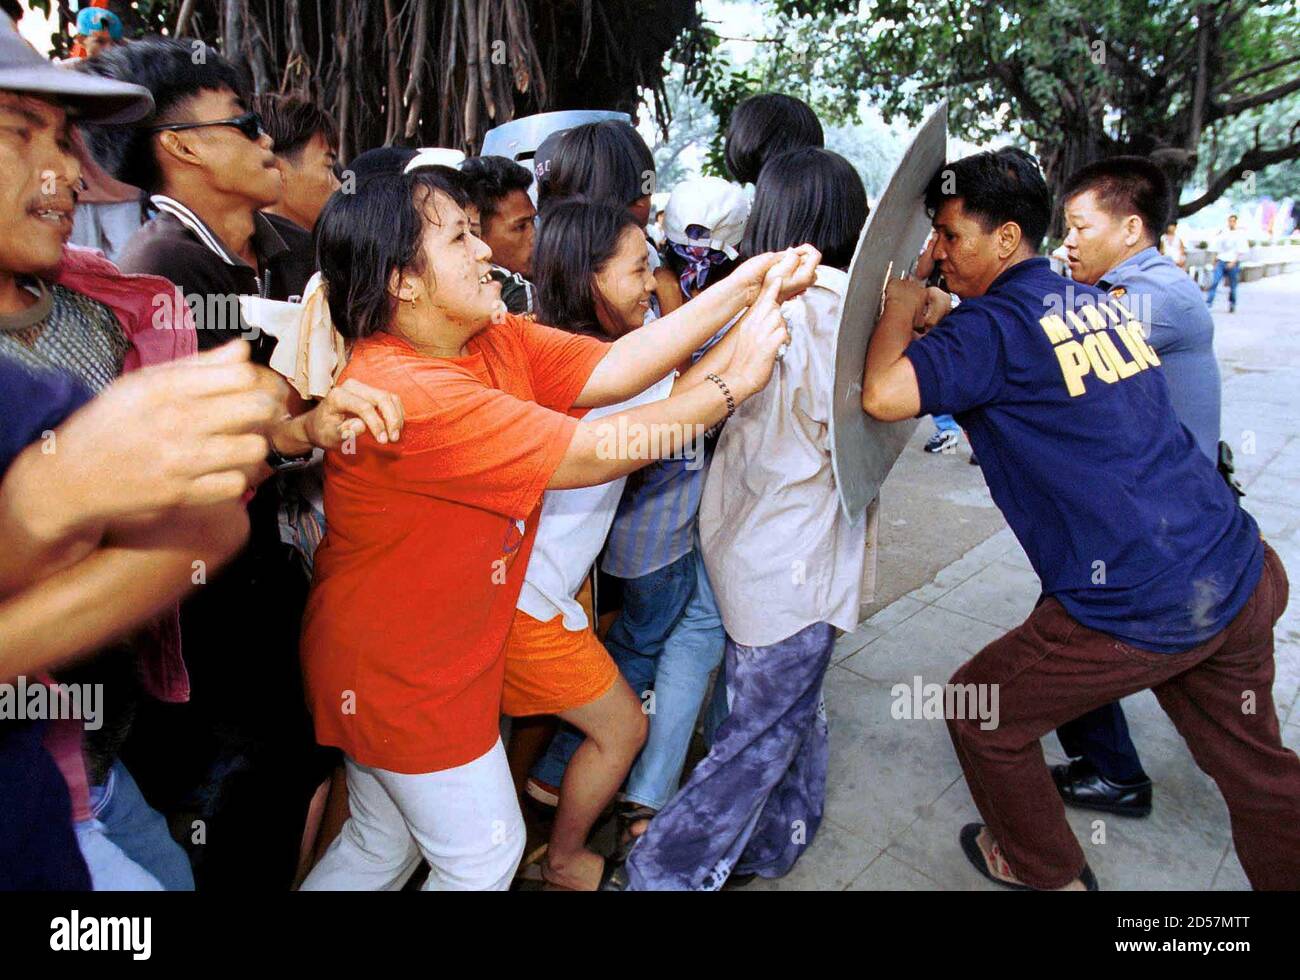 Photos of philippines prostitutes